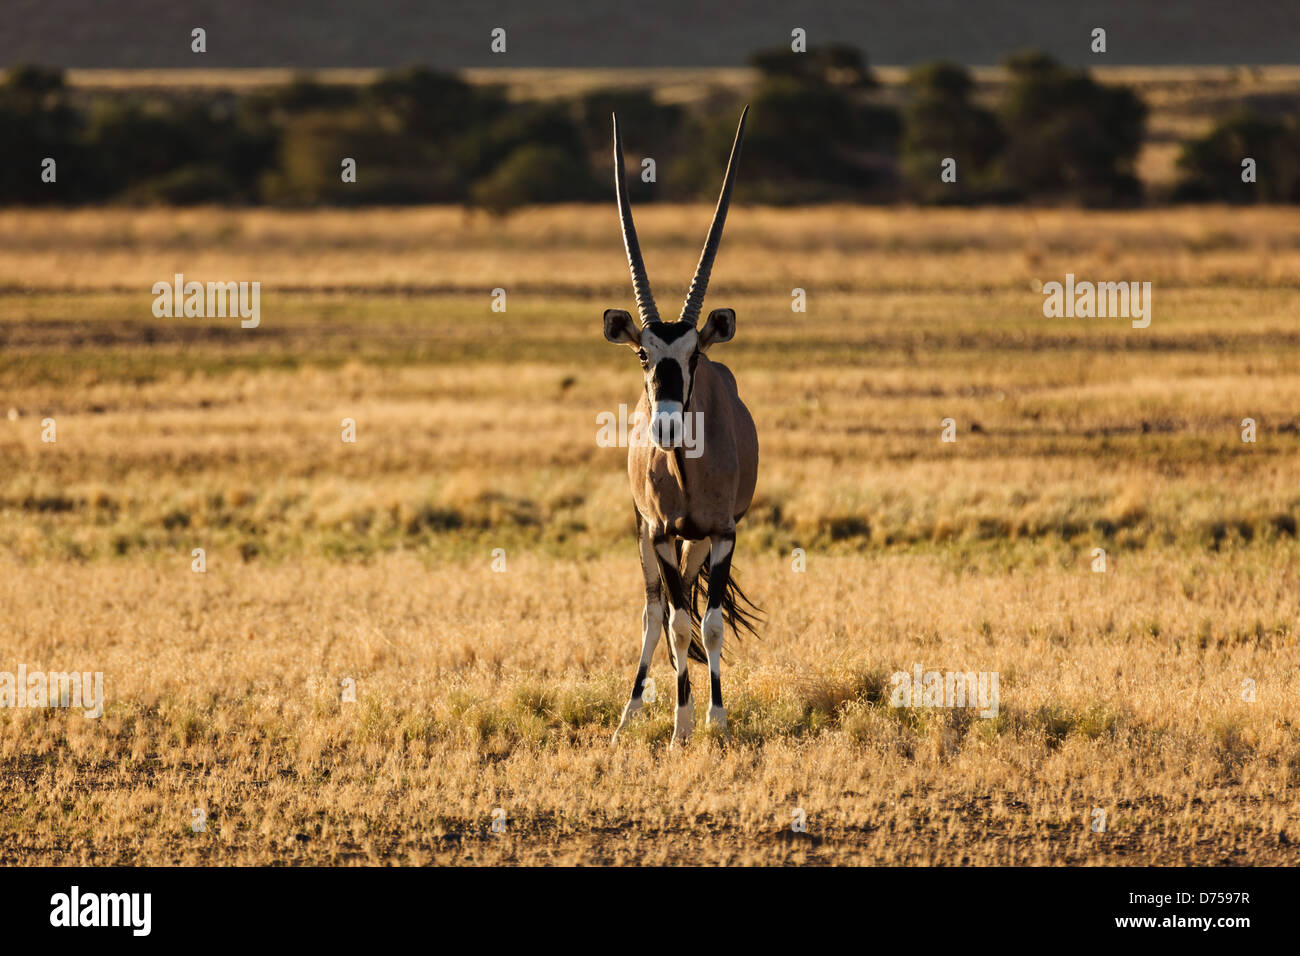 La fotocamera del gemsbok Oryx è rivolta verso il deserto della Namibia Foto Stock